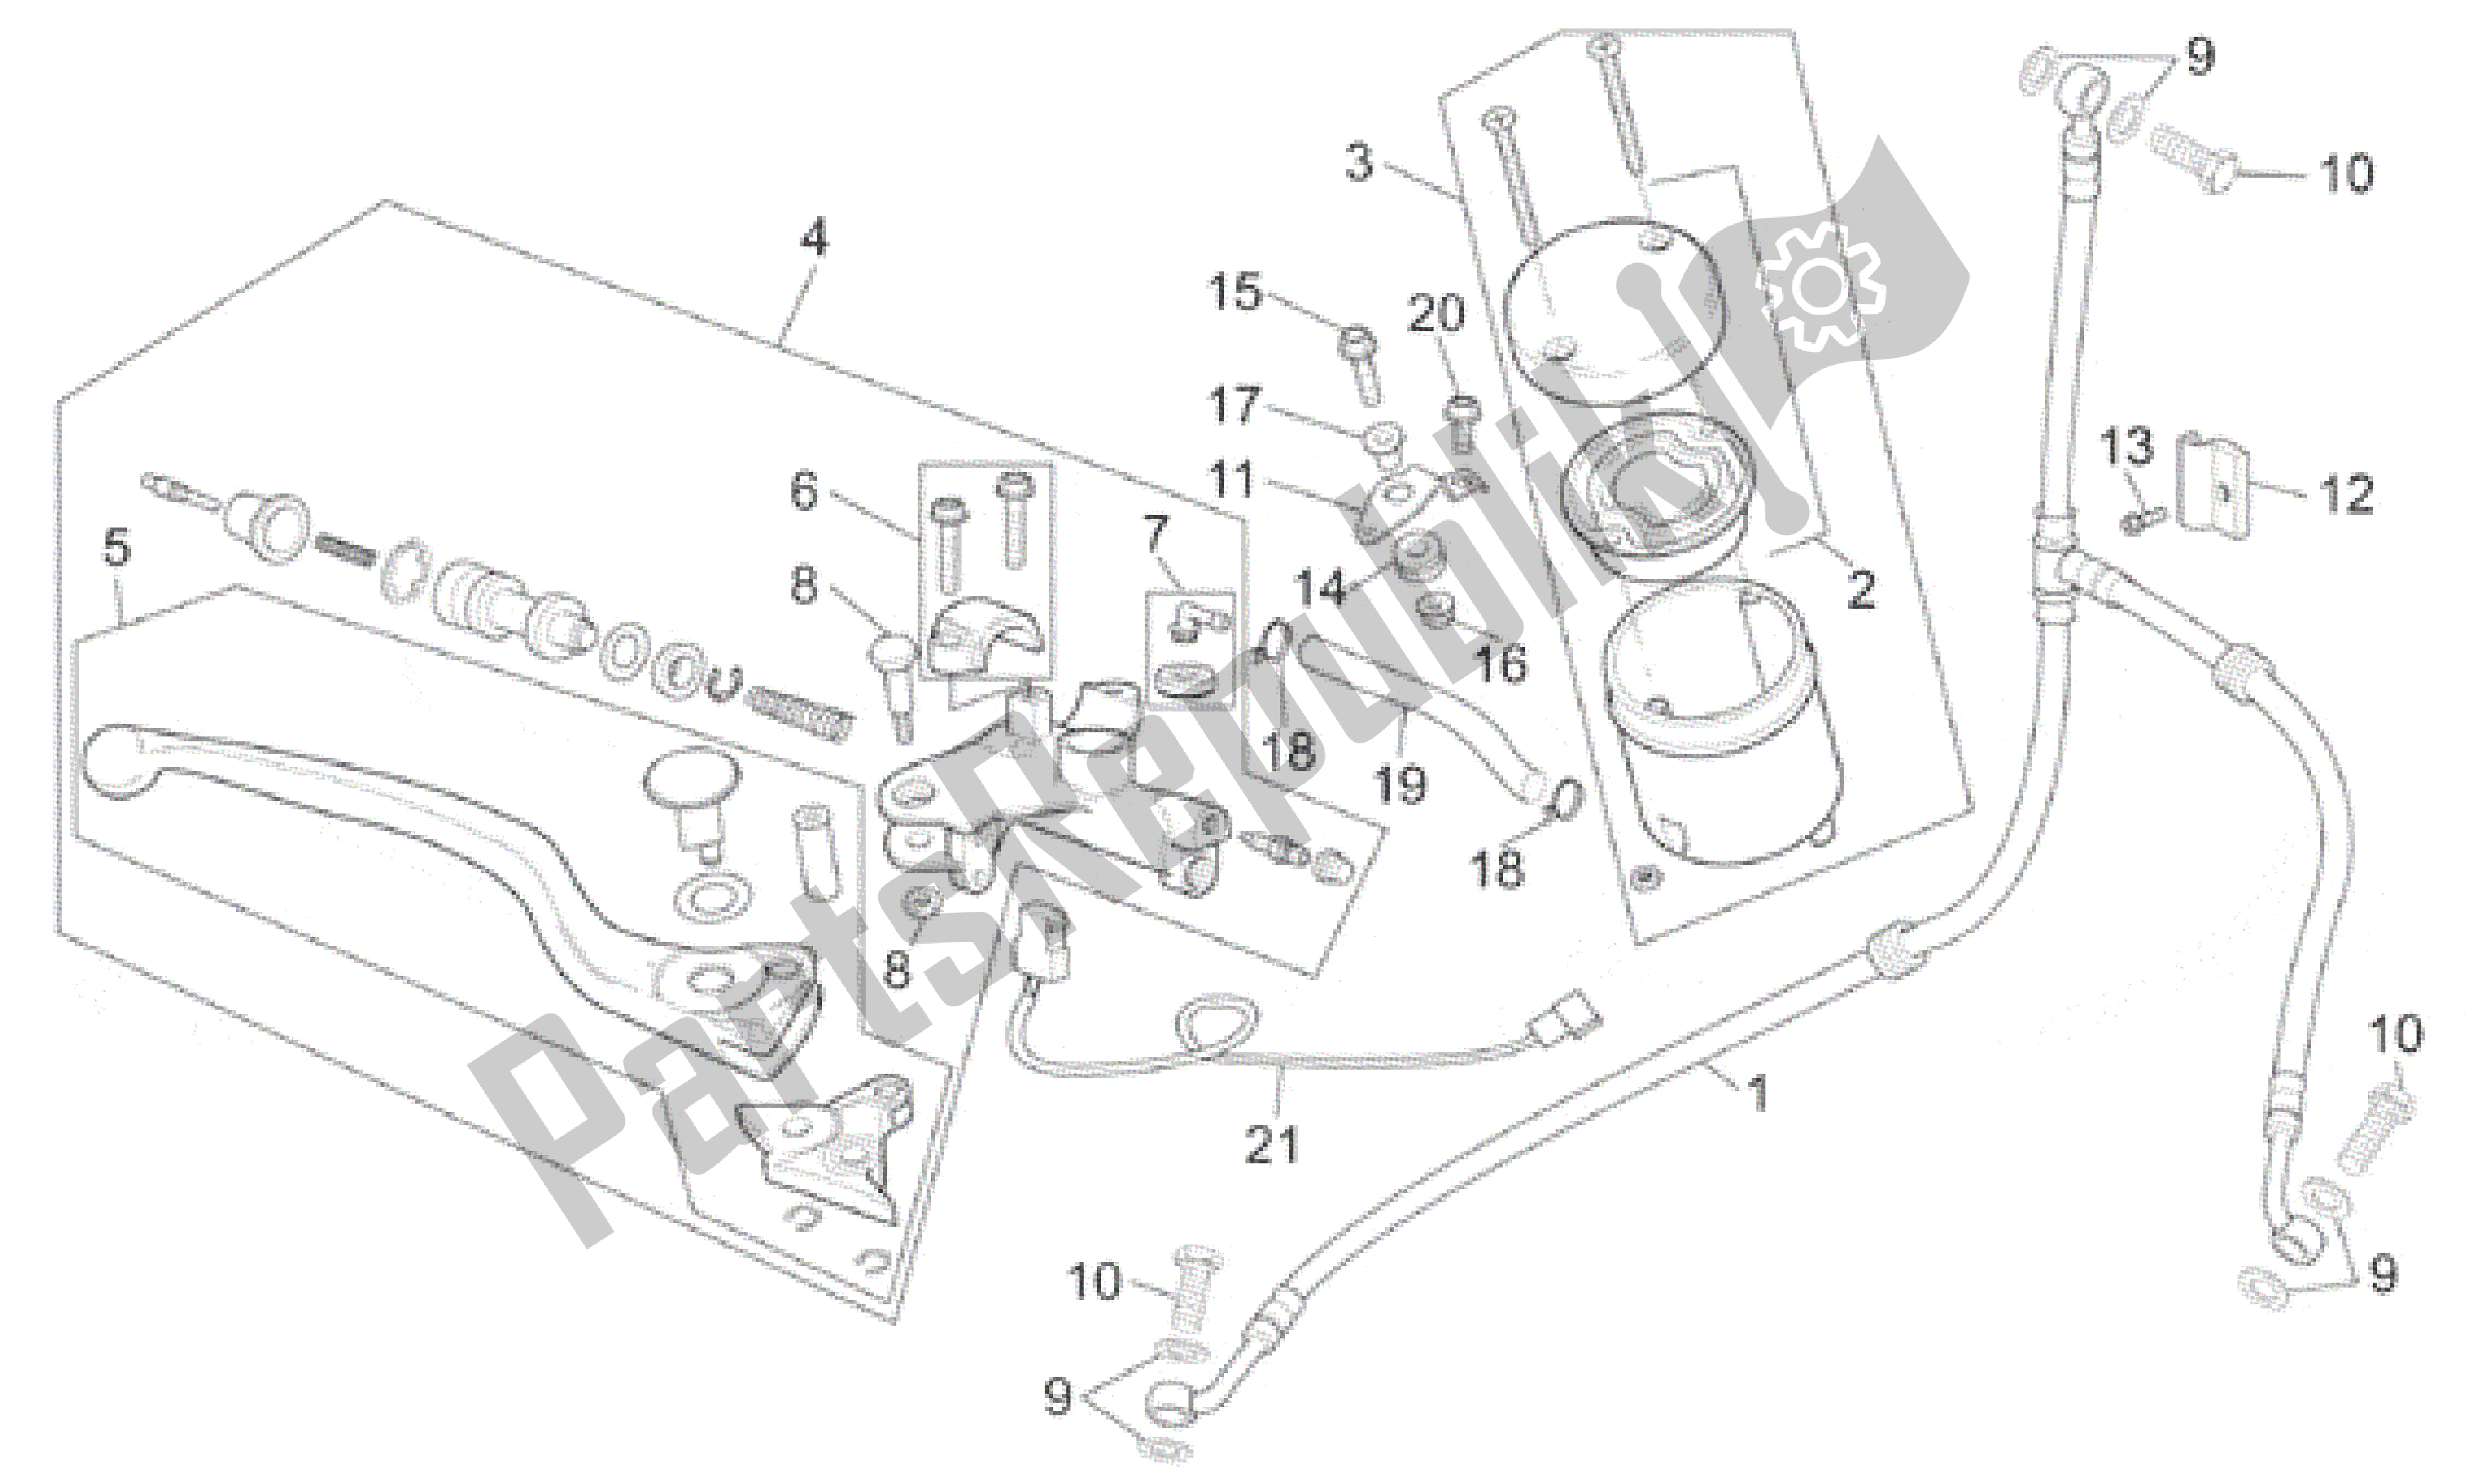 All parts for the Front Brake Pump of the Aprilia SL Falco 1000 2000 - 2002